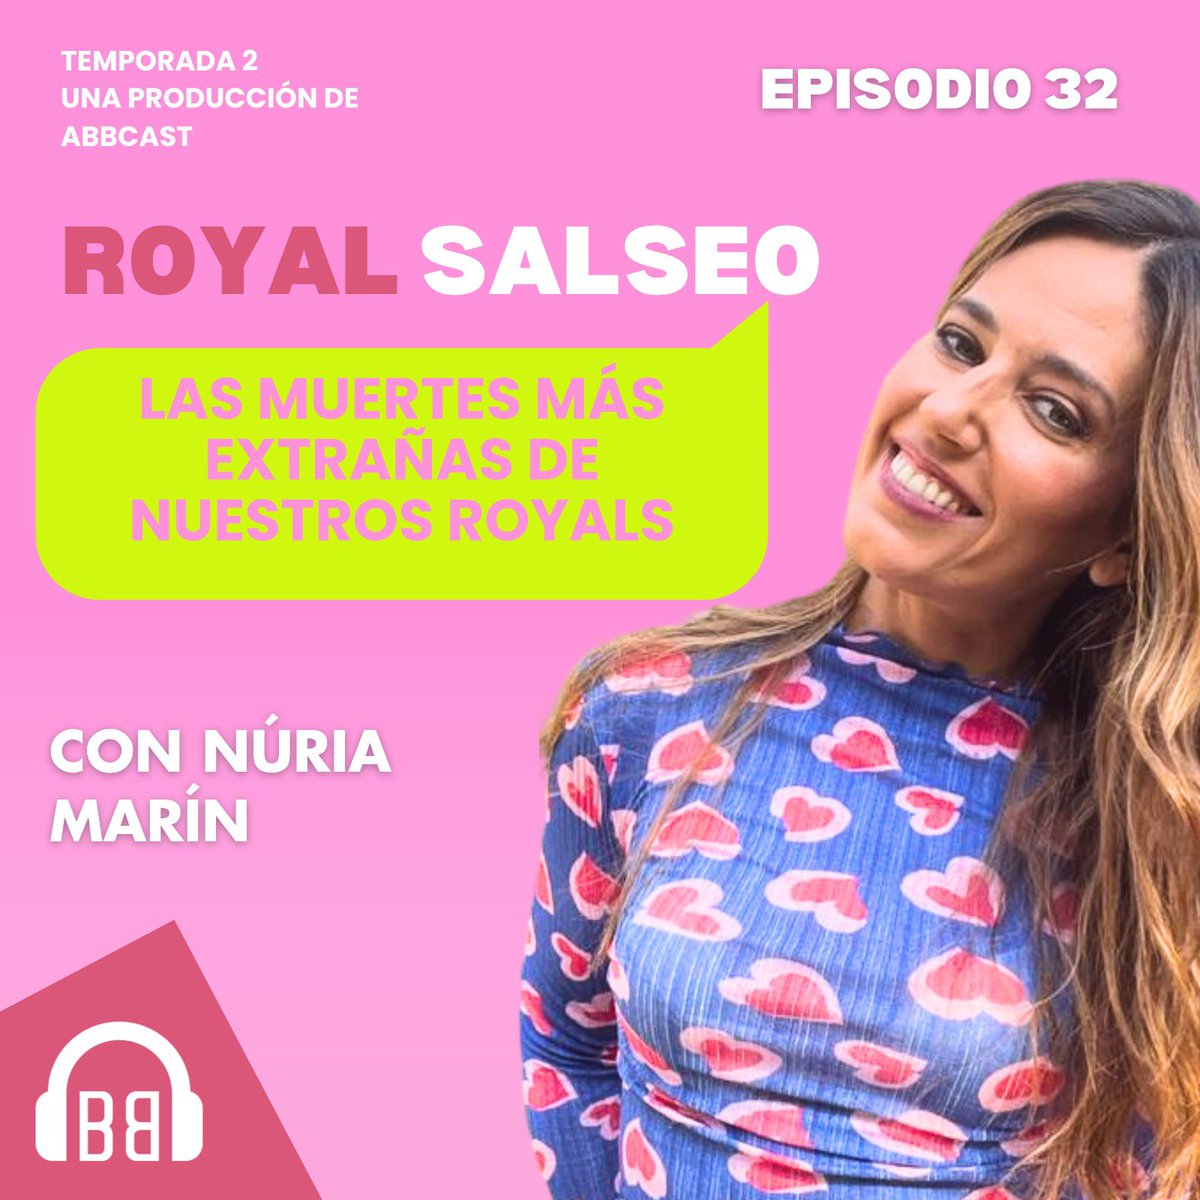 💓💅Miércoles ya lleva el nombre de @nuriasecret y #PuroSalseo 👑Hoy toca un #royalsalseo de los que no gustan hablando de las muertes más random de nuestros queridos royals. 🫶🏻Junto a @nuriatiburcio 👇🏻 open.spotify.com/episode/4mDtvV…